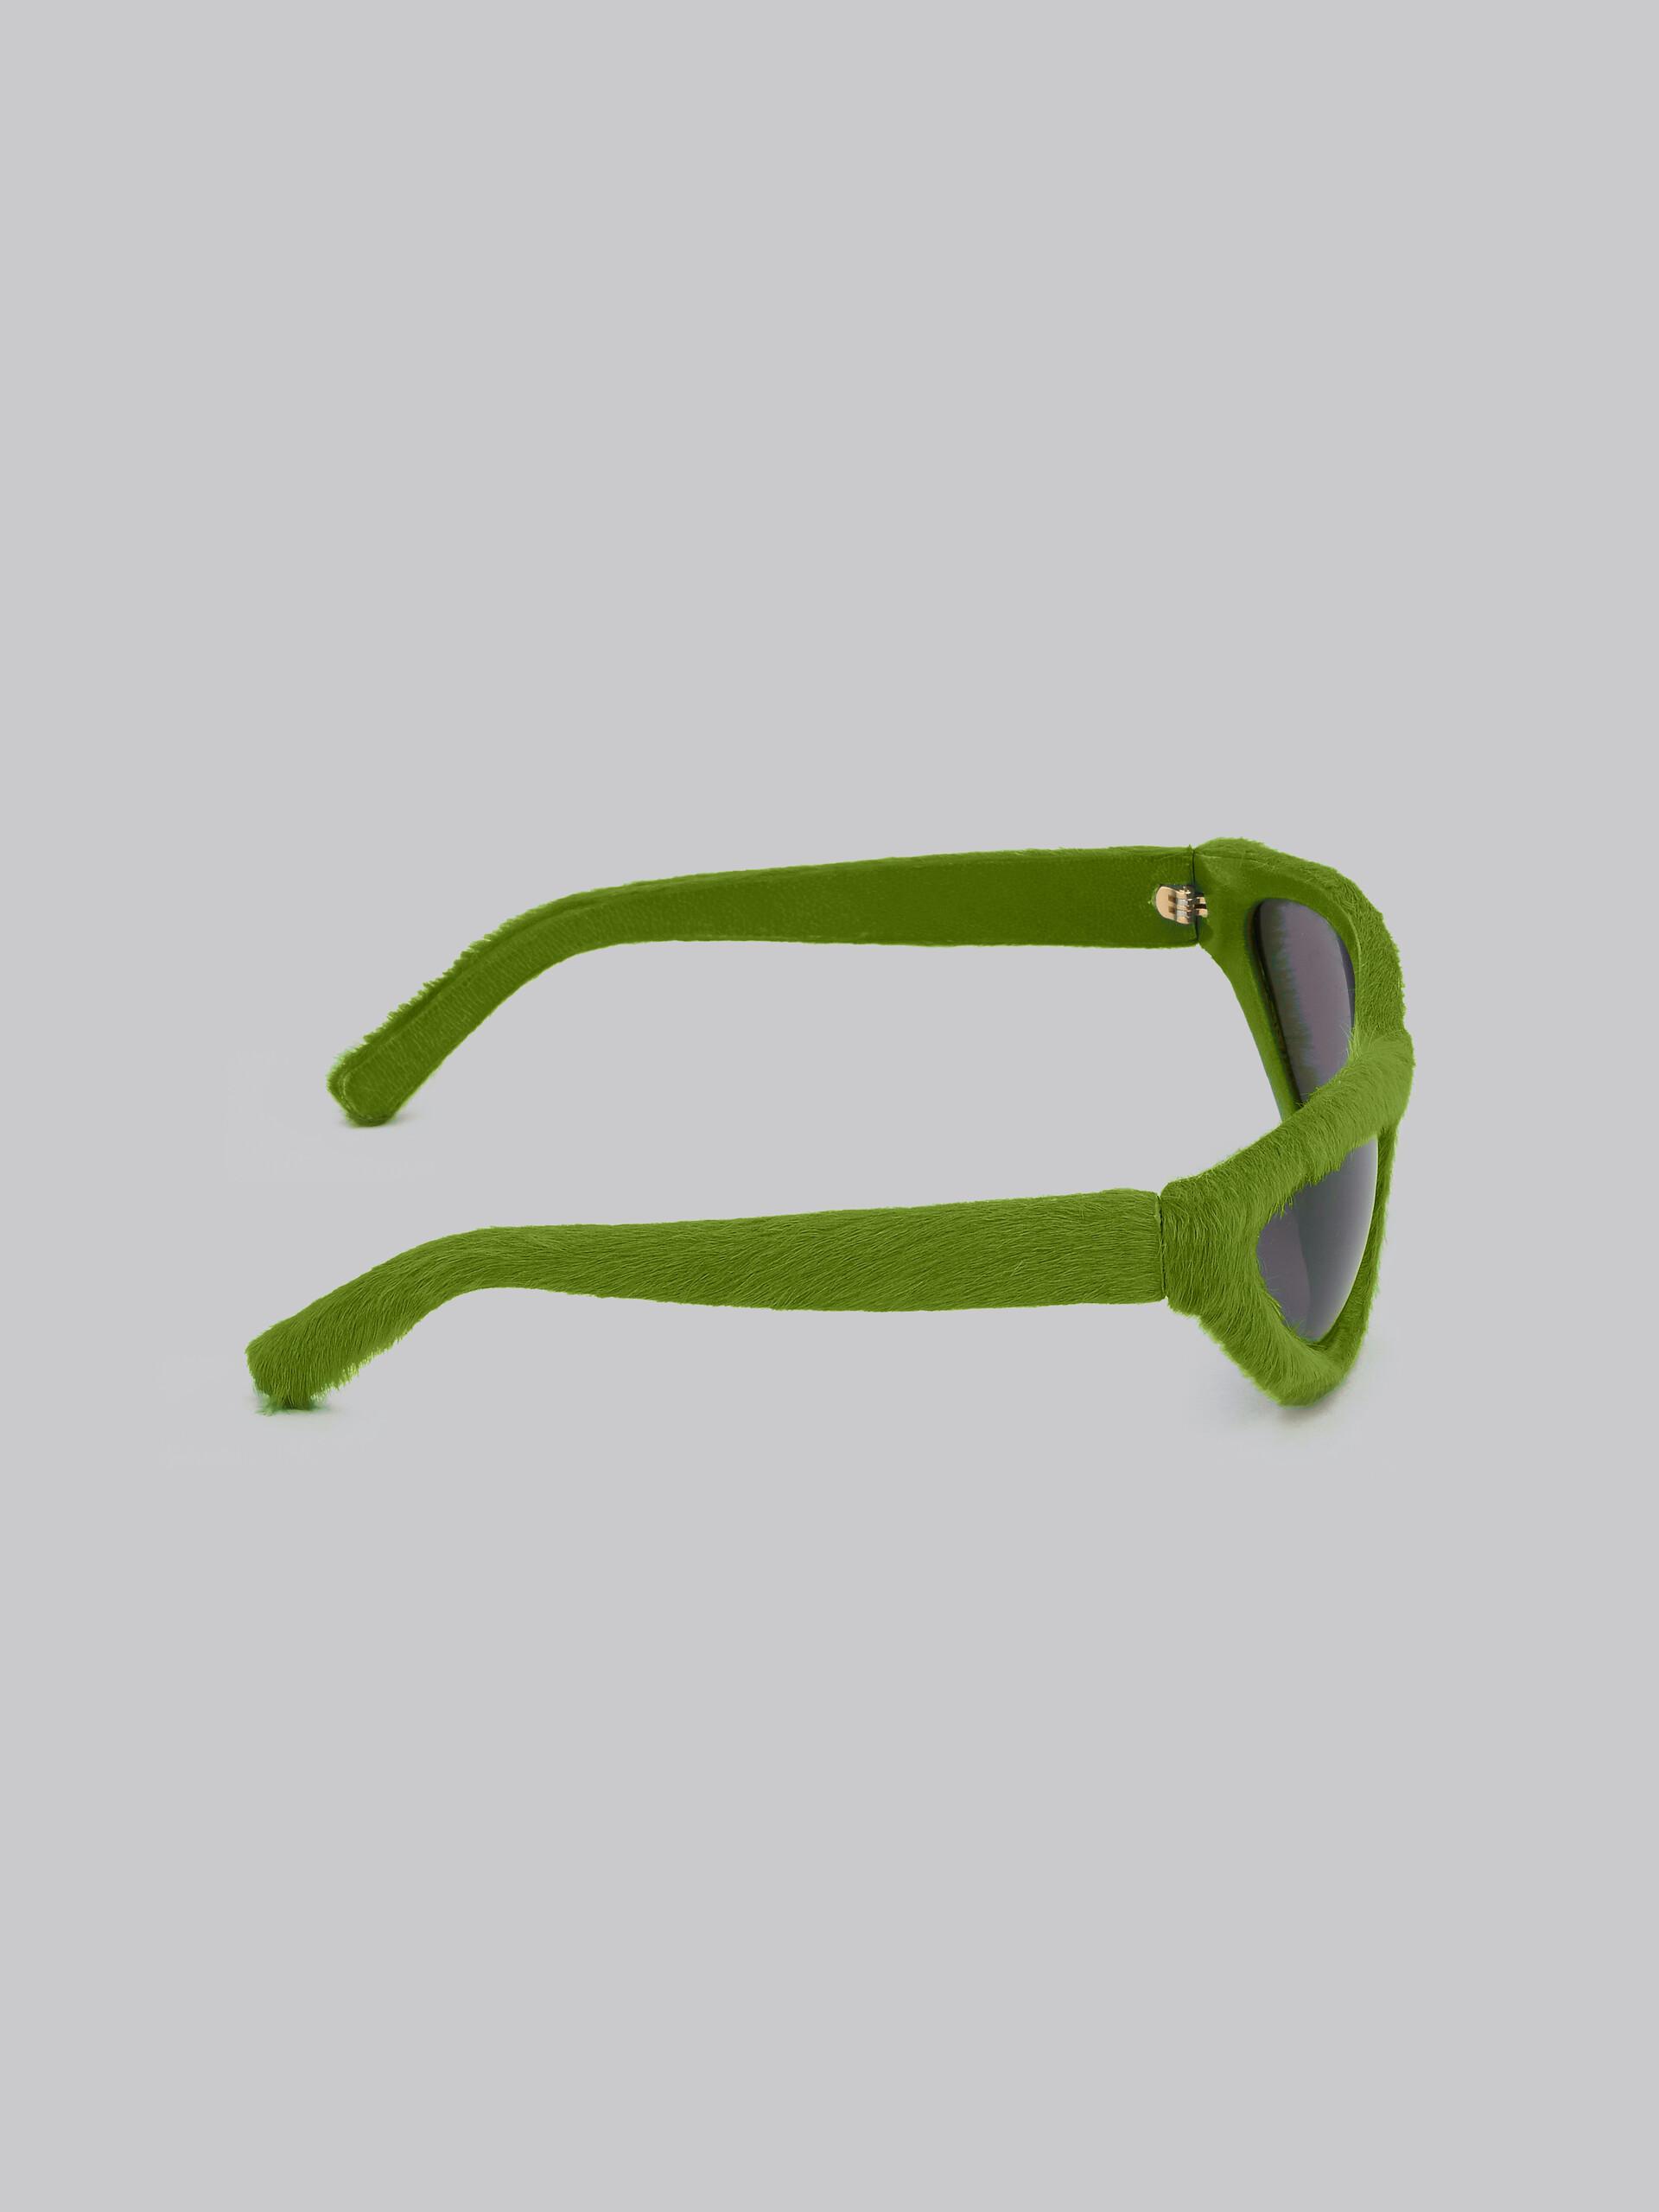 Occhiali Mavericks effetto furry verde - Occhiali da sole - Image 4